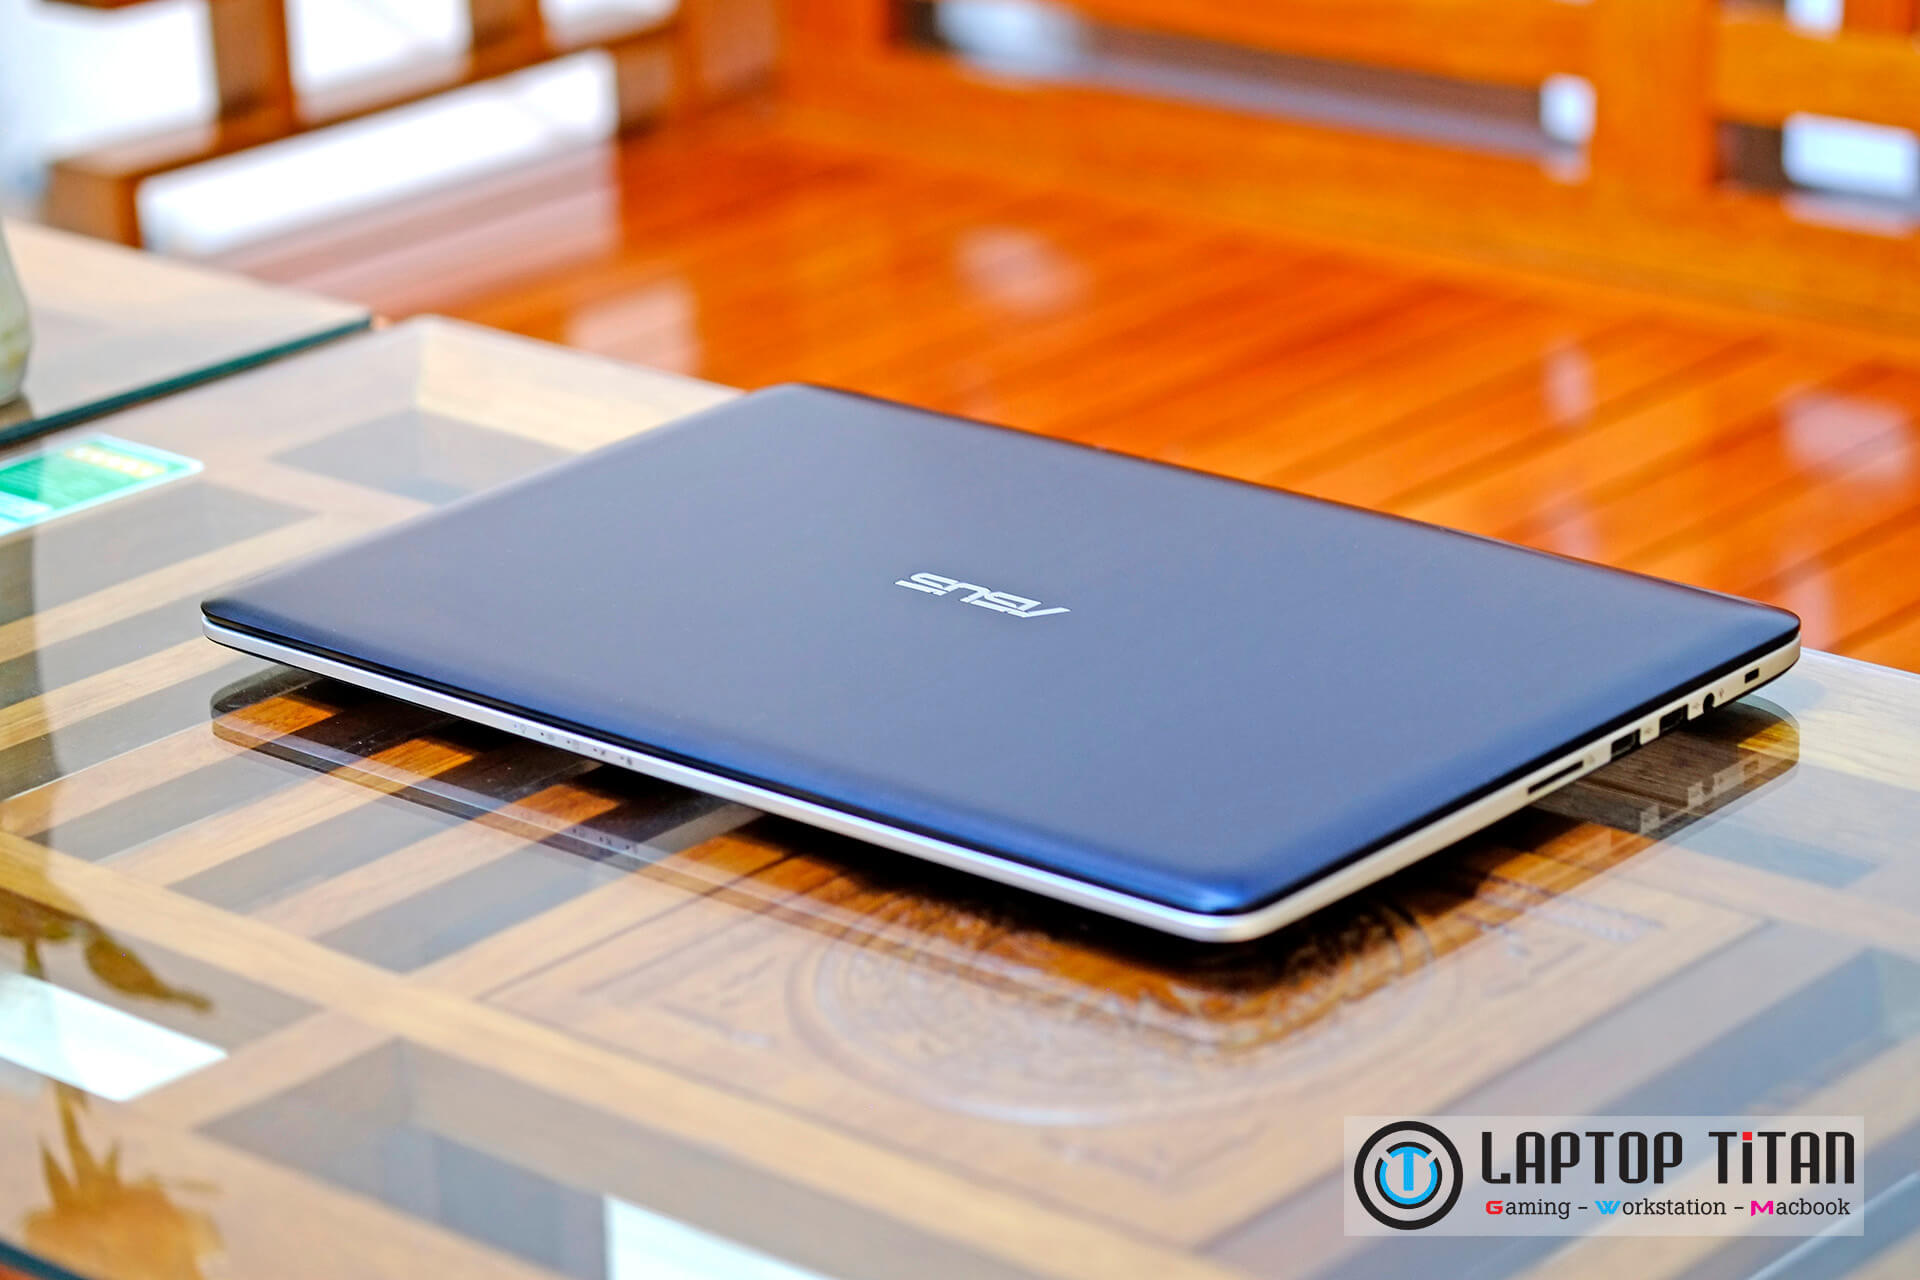 Asus K501Lx Laptop Titan 004